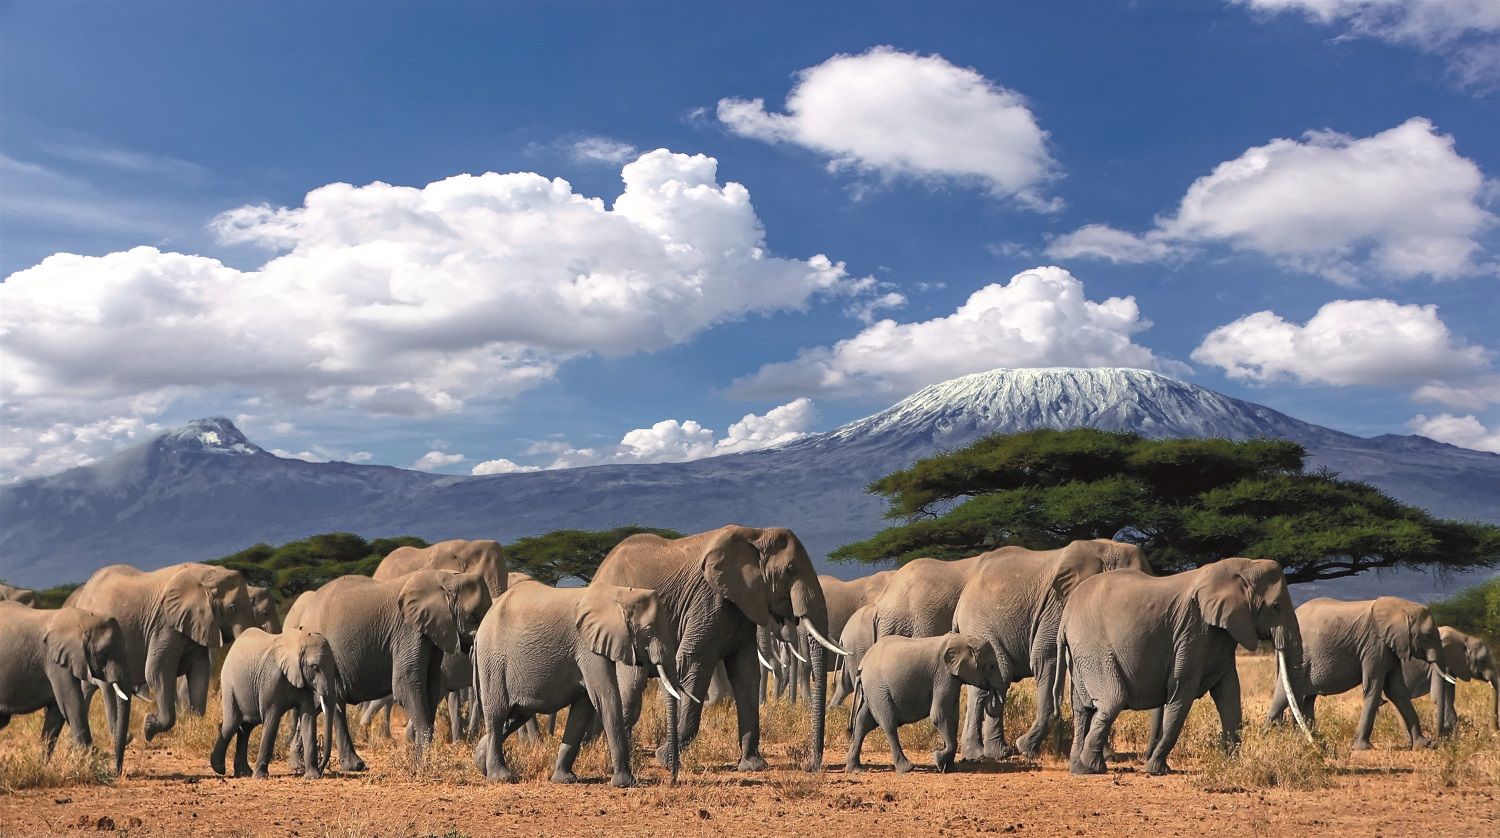 Elefantes ante el Kilimanjaro nevado.